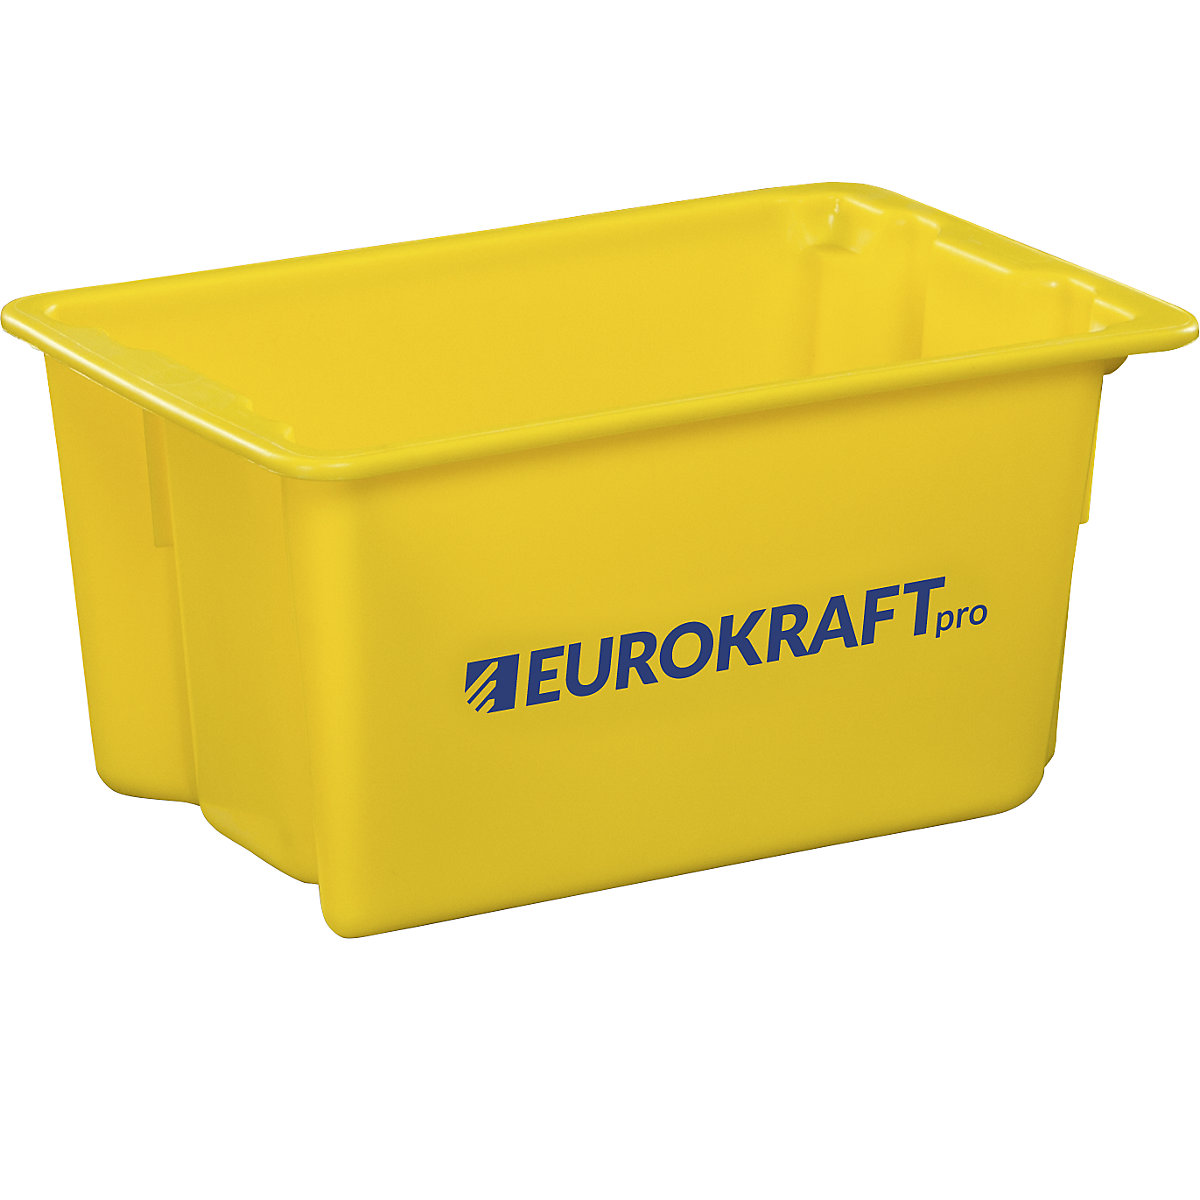 EUROKRAFTpro – Obrotowy pojemnik do ustawiania w stos z polipropylenu dopuszczonego do kontaktu z żywnością, poj. 50 l, opak. 3 szt., ścianki i dno zamknięte, żółte